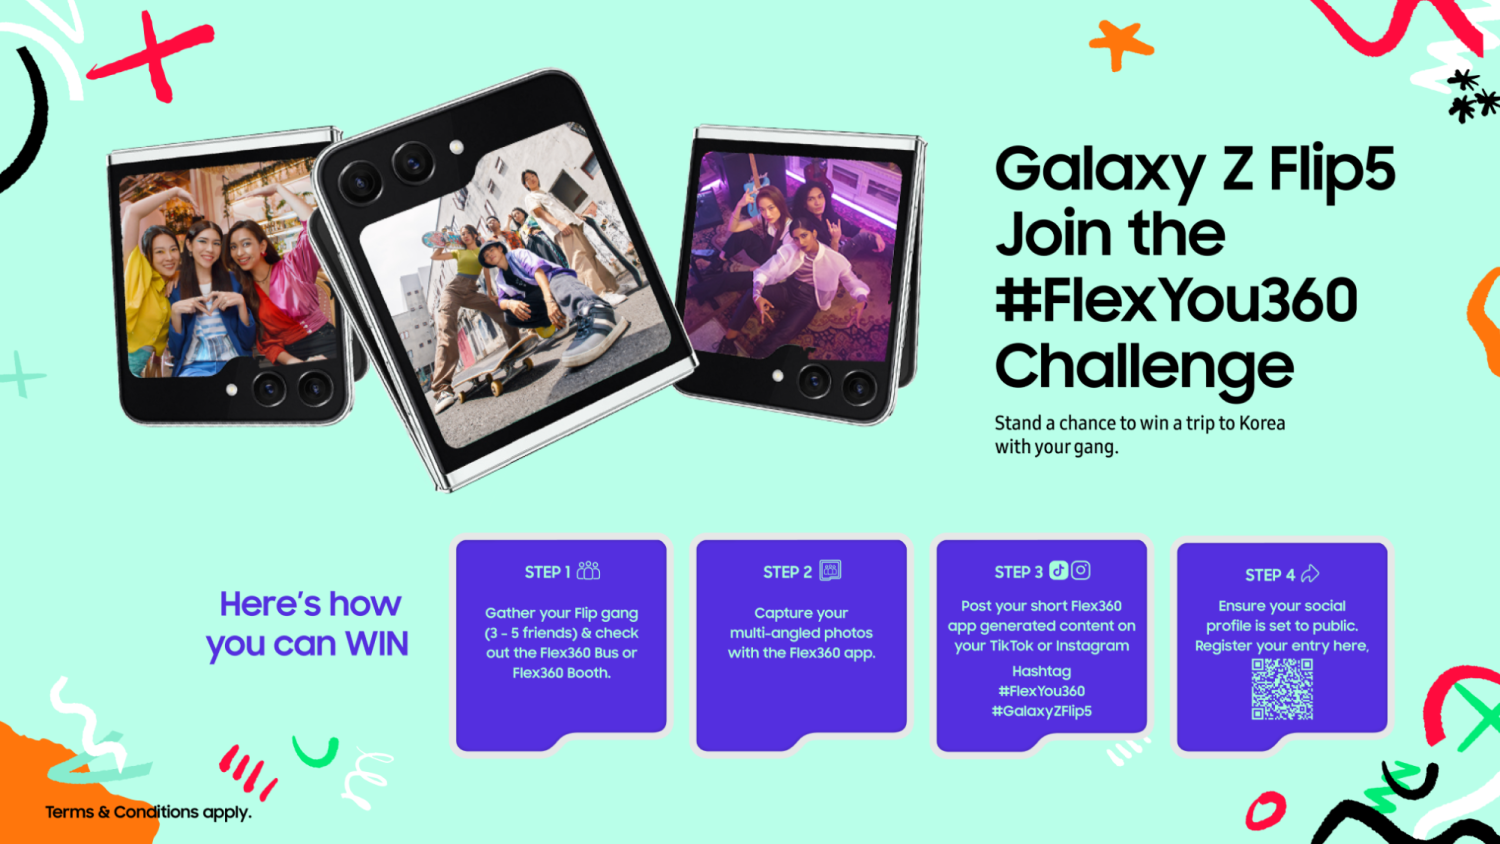 Sertai cabaran #FlexYou360 dan menangi percutian ke Seoul - eksklusif untuk pengguna Galaxy Z Flip5 7